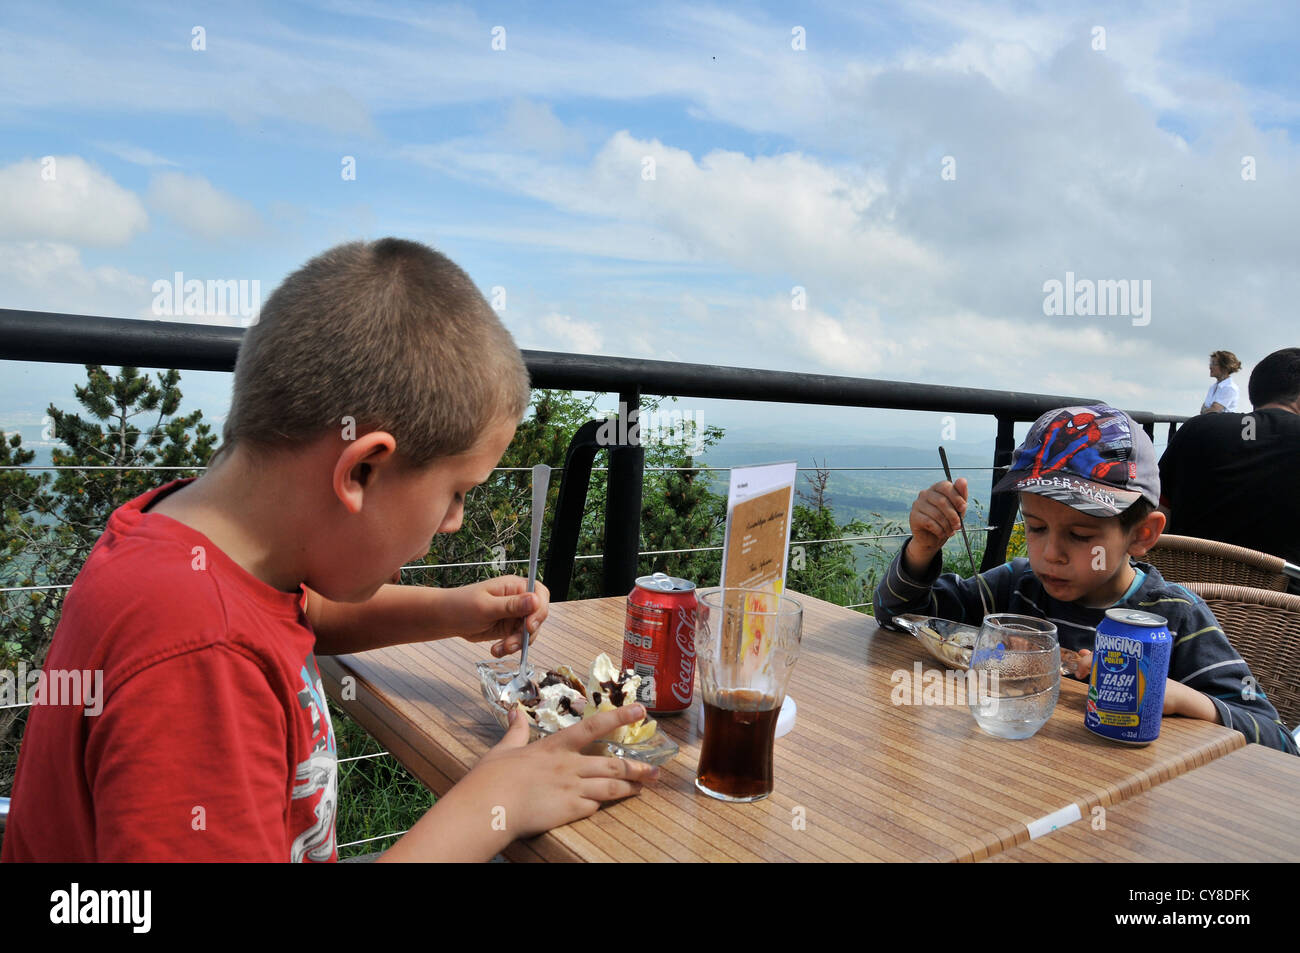 Les jeunes garçons de manger sur la terrasse du pic Puy de Dome Auvergne France Banque D'Images